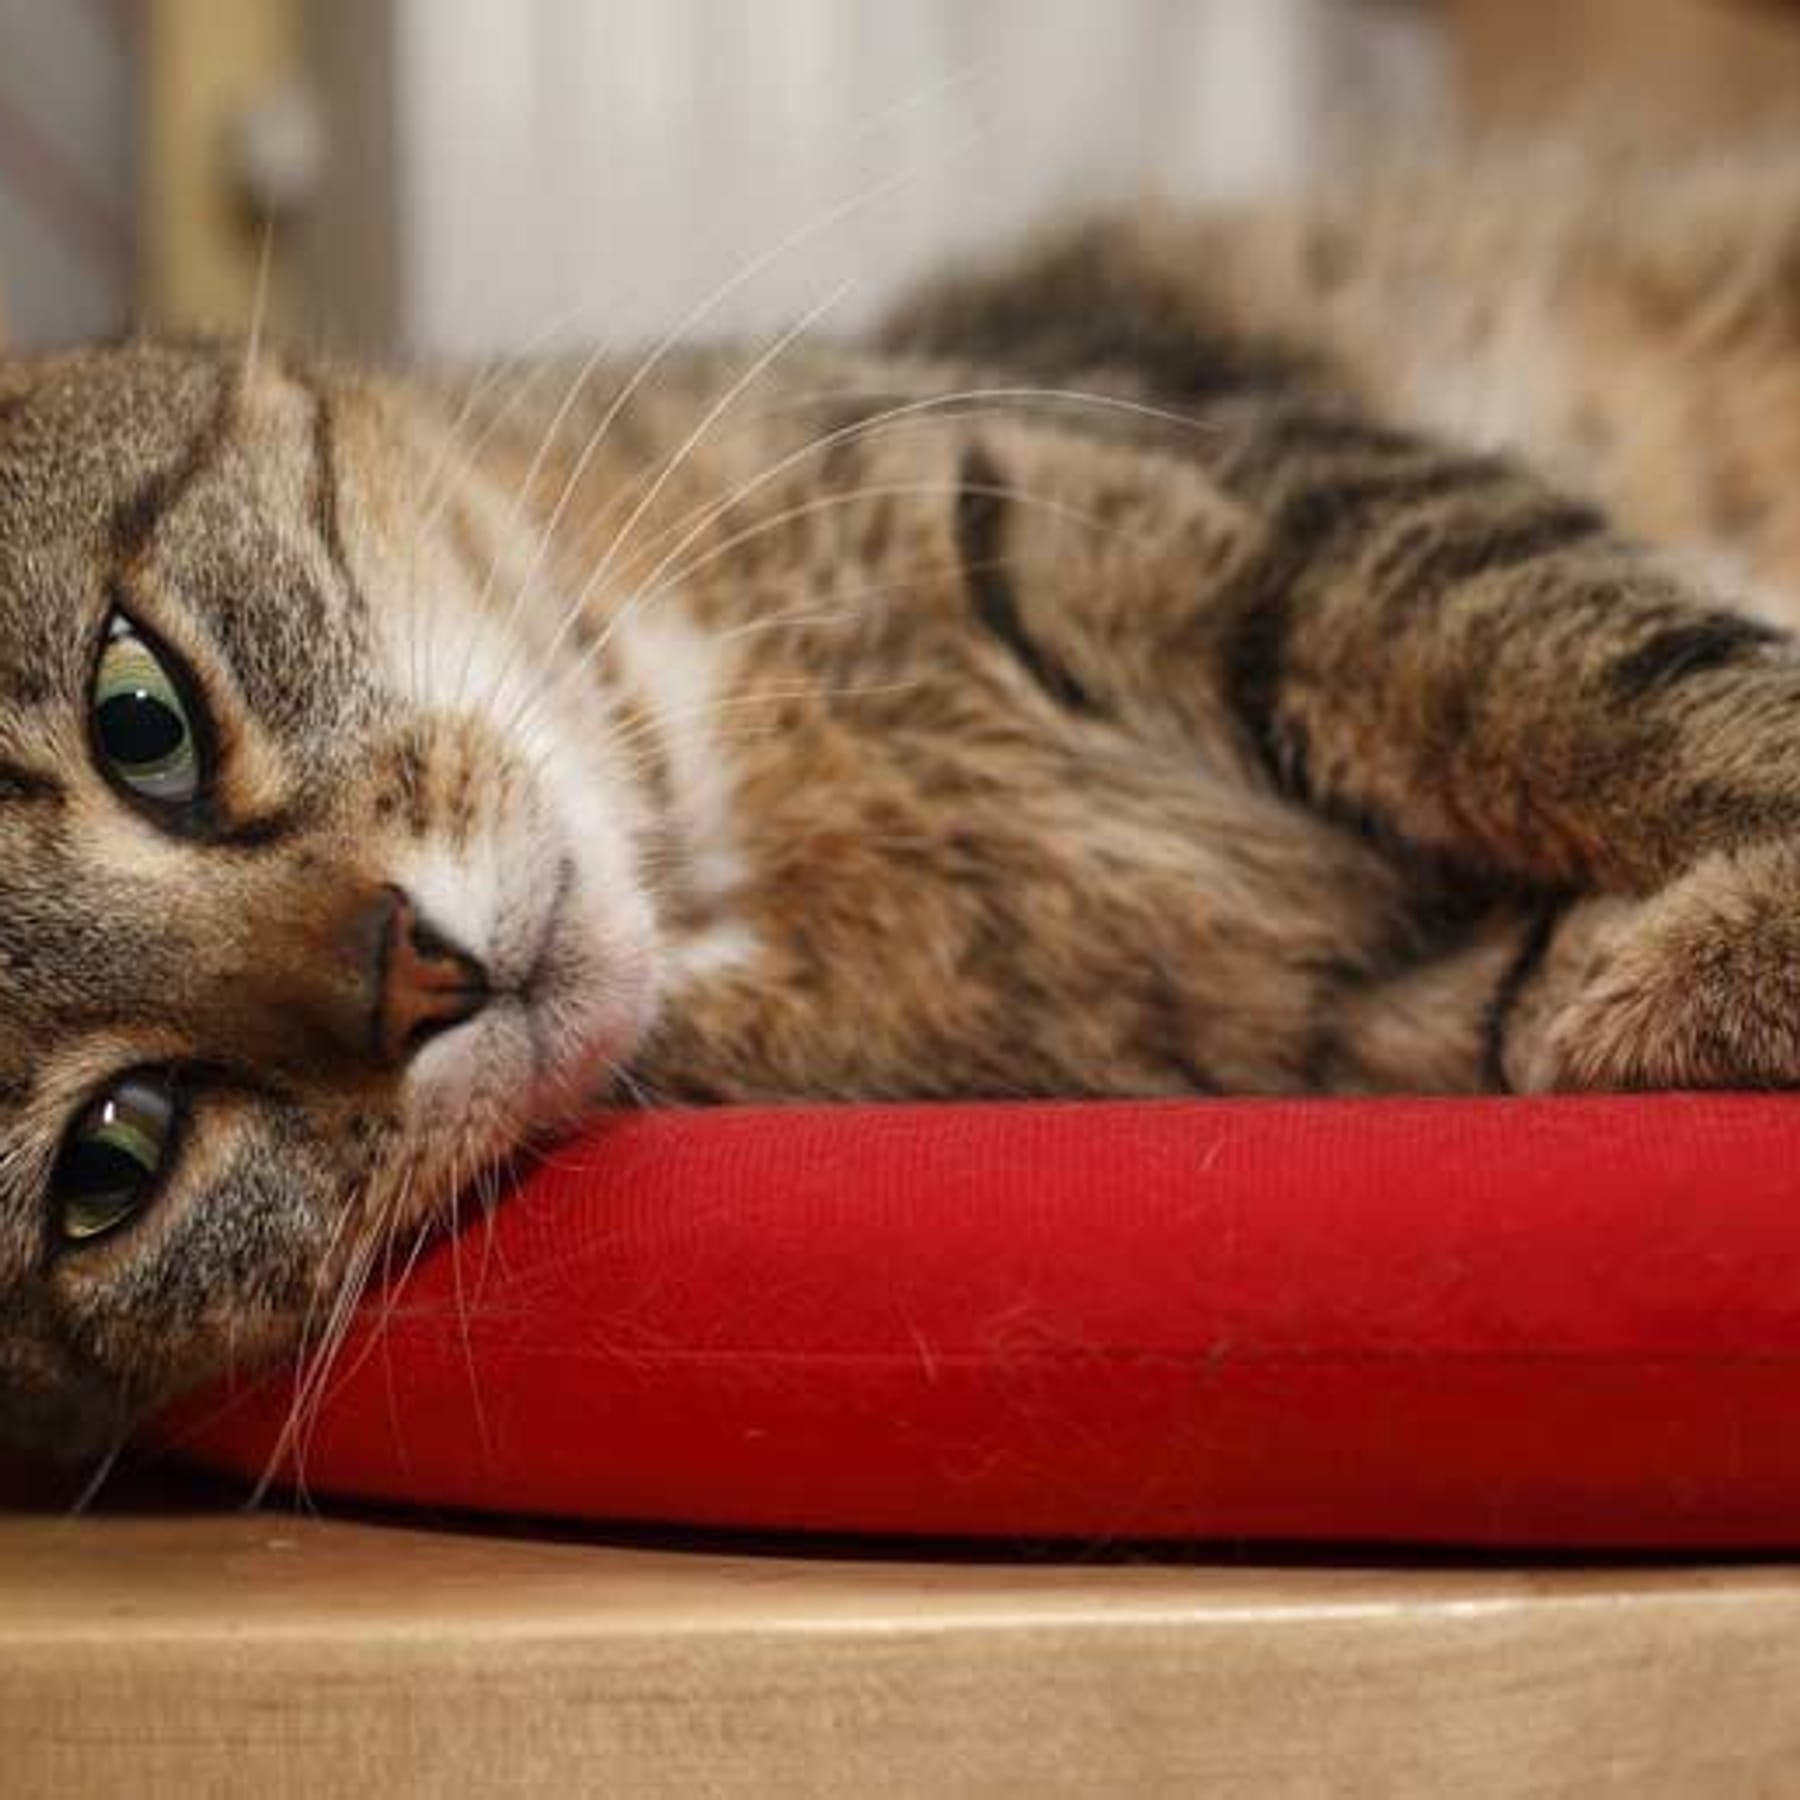 Ultraschall Katzenschreck - vertreibt die Katze wirkungsvoll und  tierfreundlich